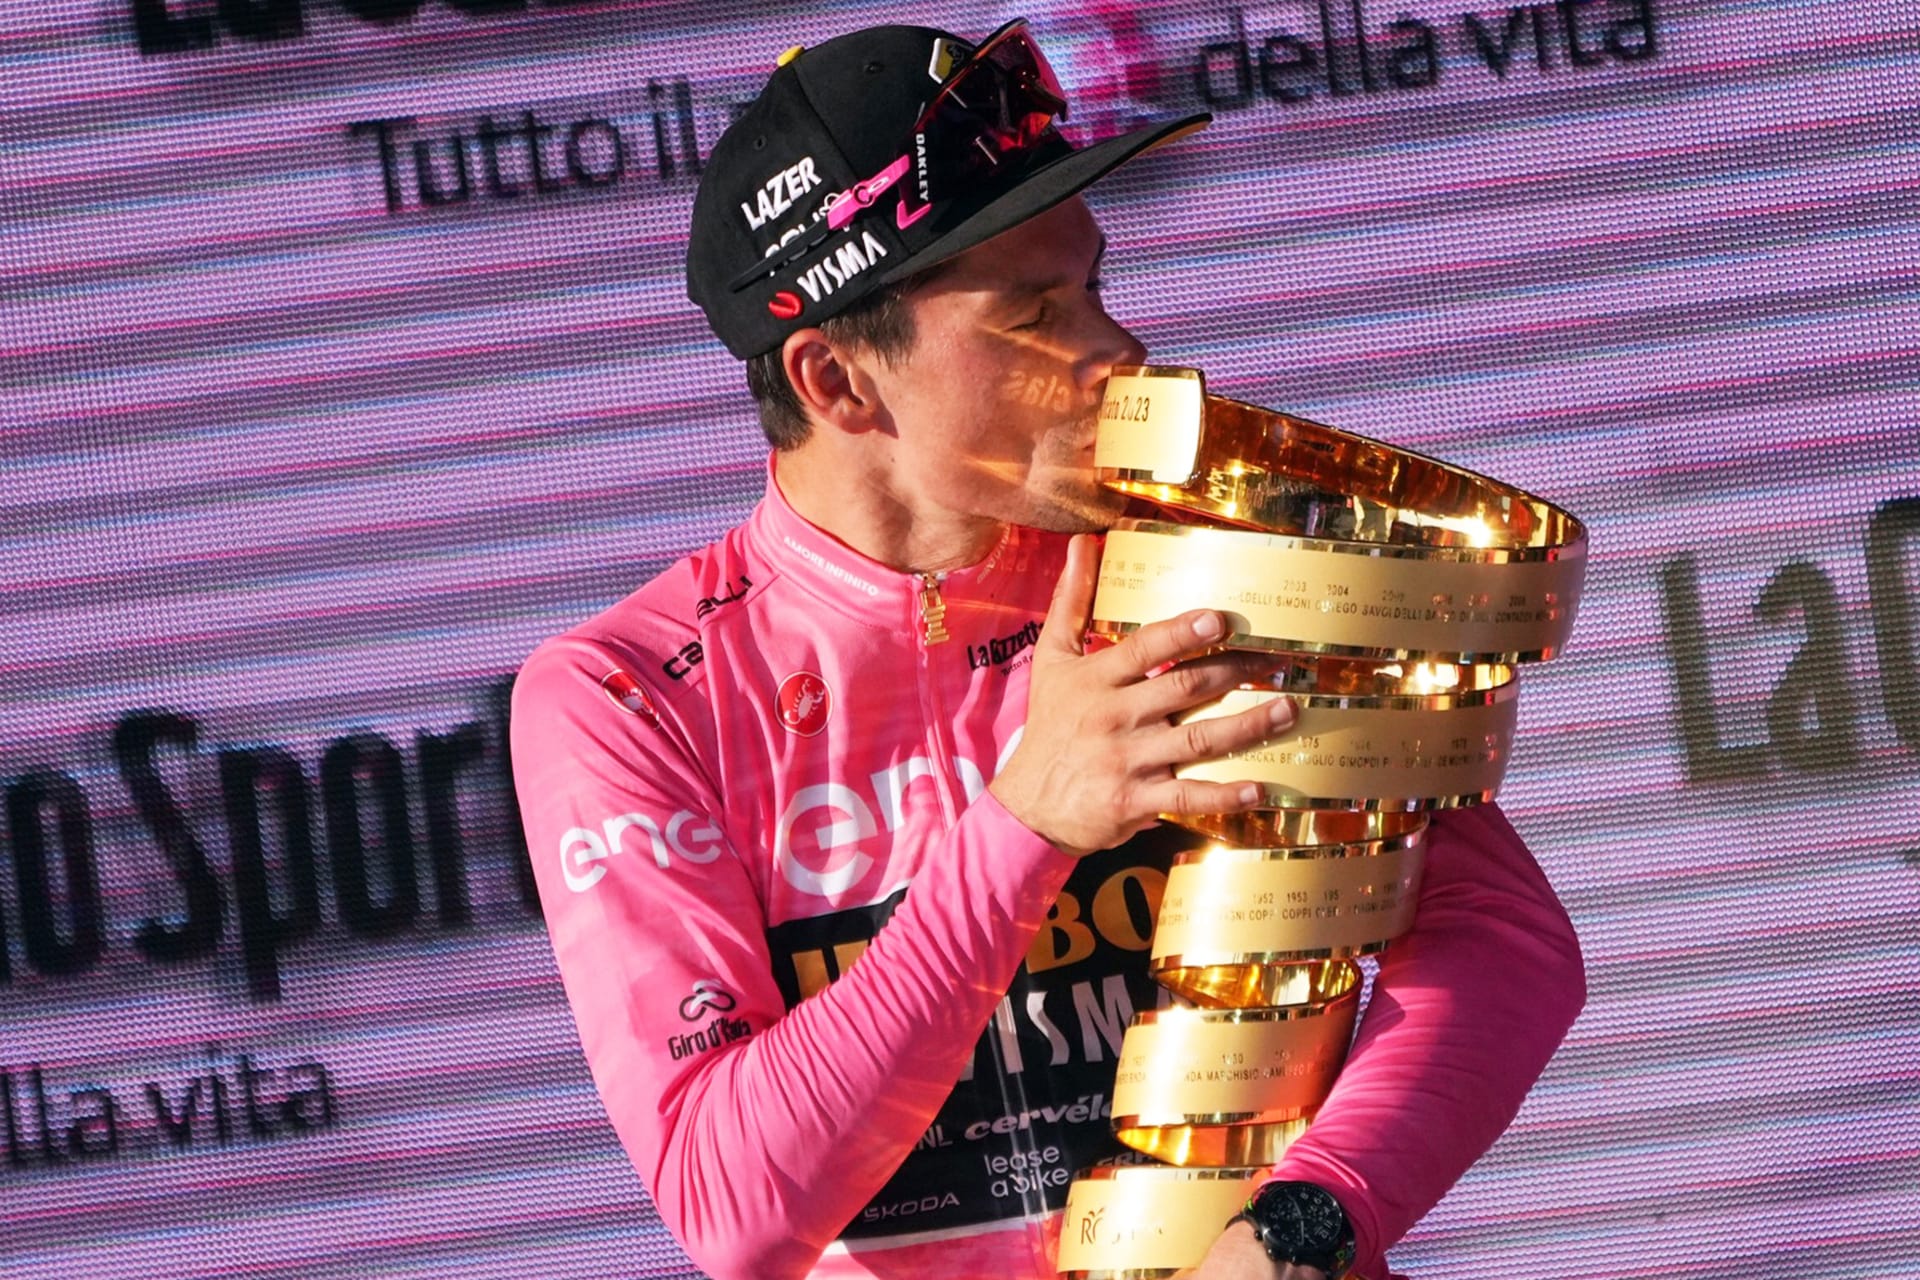 Primož Roglič, který ovládl jarní Giro dItalia, byl oceněn částkou 265 000 eur. Pro vítěze Tour de France je připraveno 500 000 eur. Nutno ale podotknout, že tyto prémie se dělí i mezi další členy týmu.